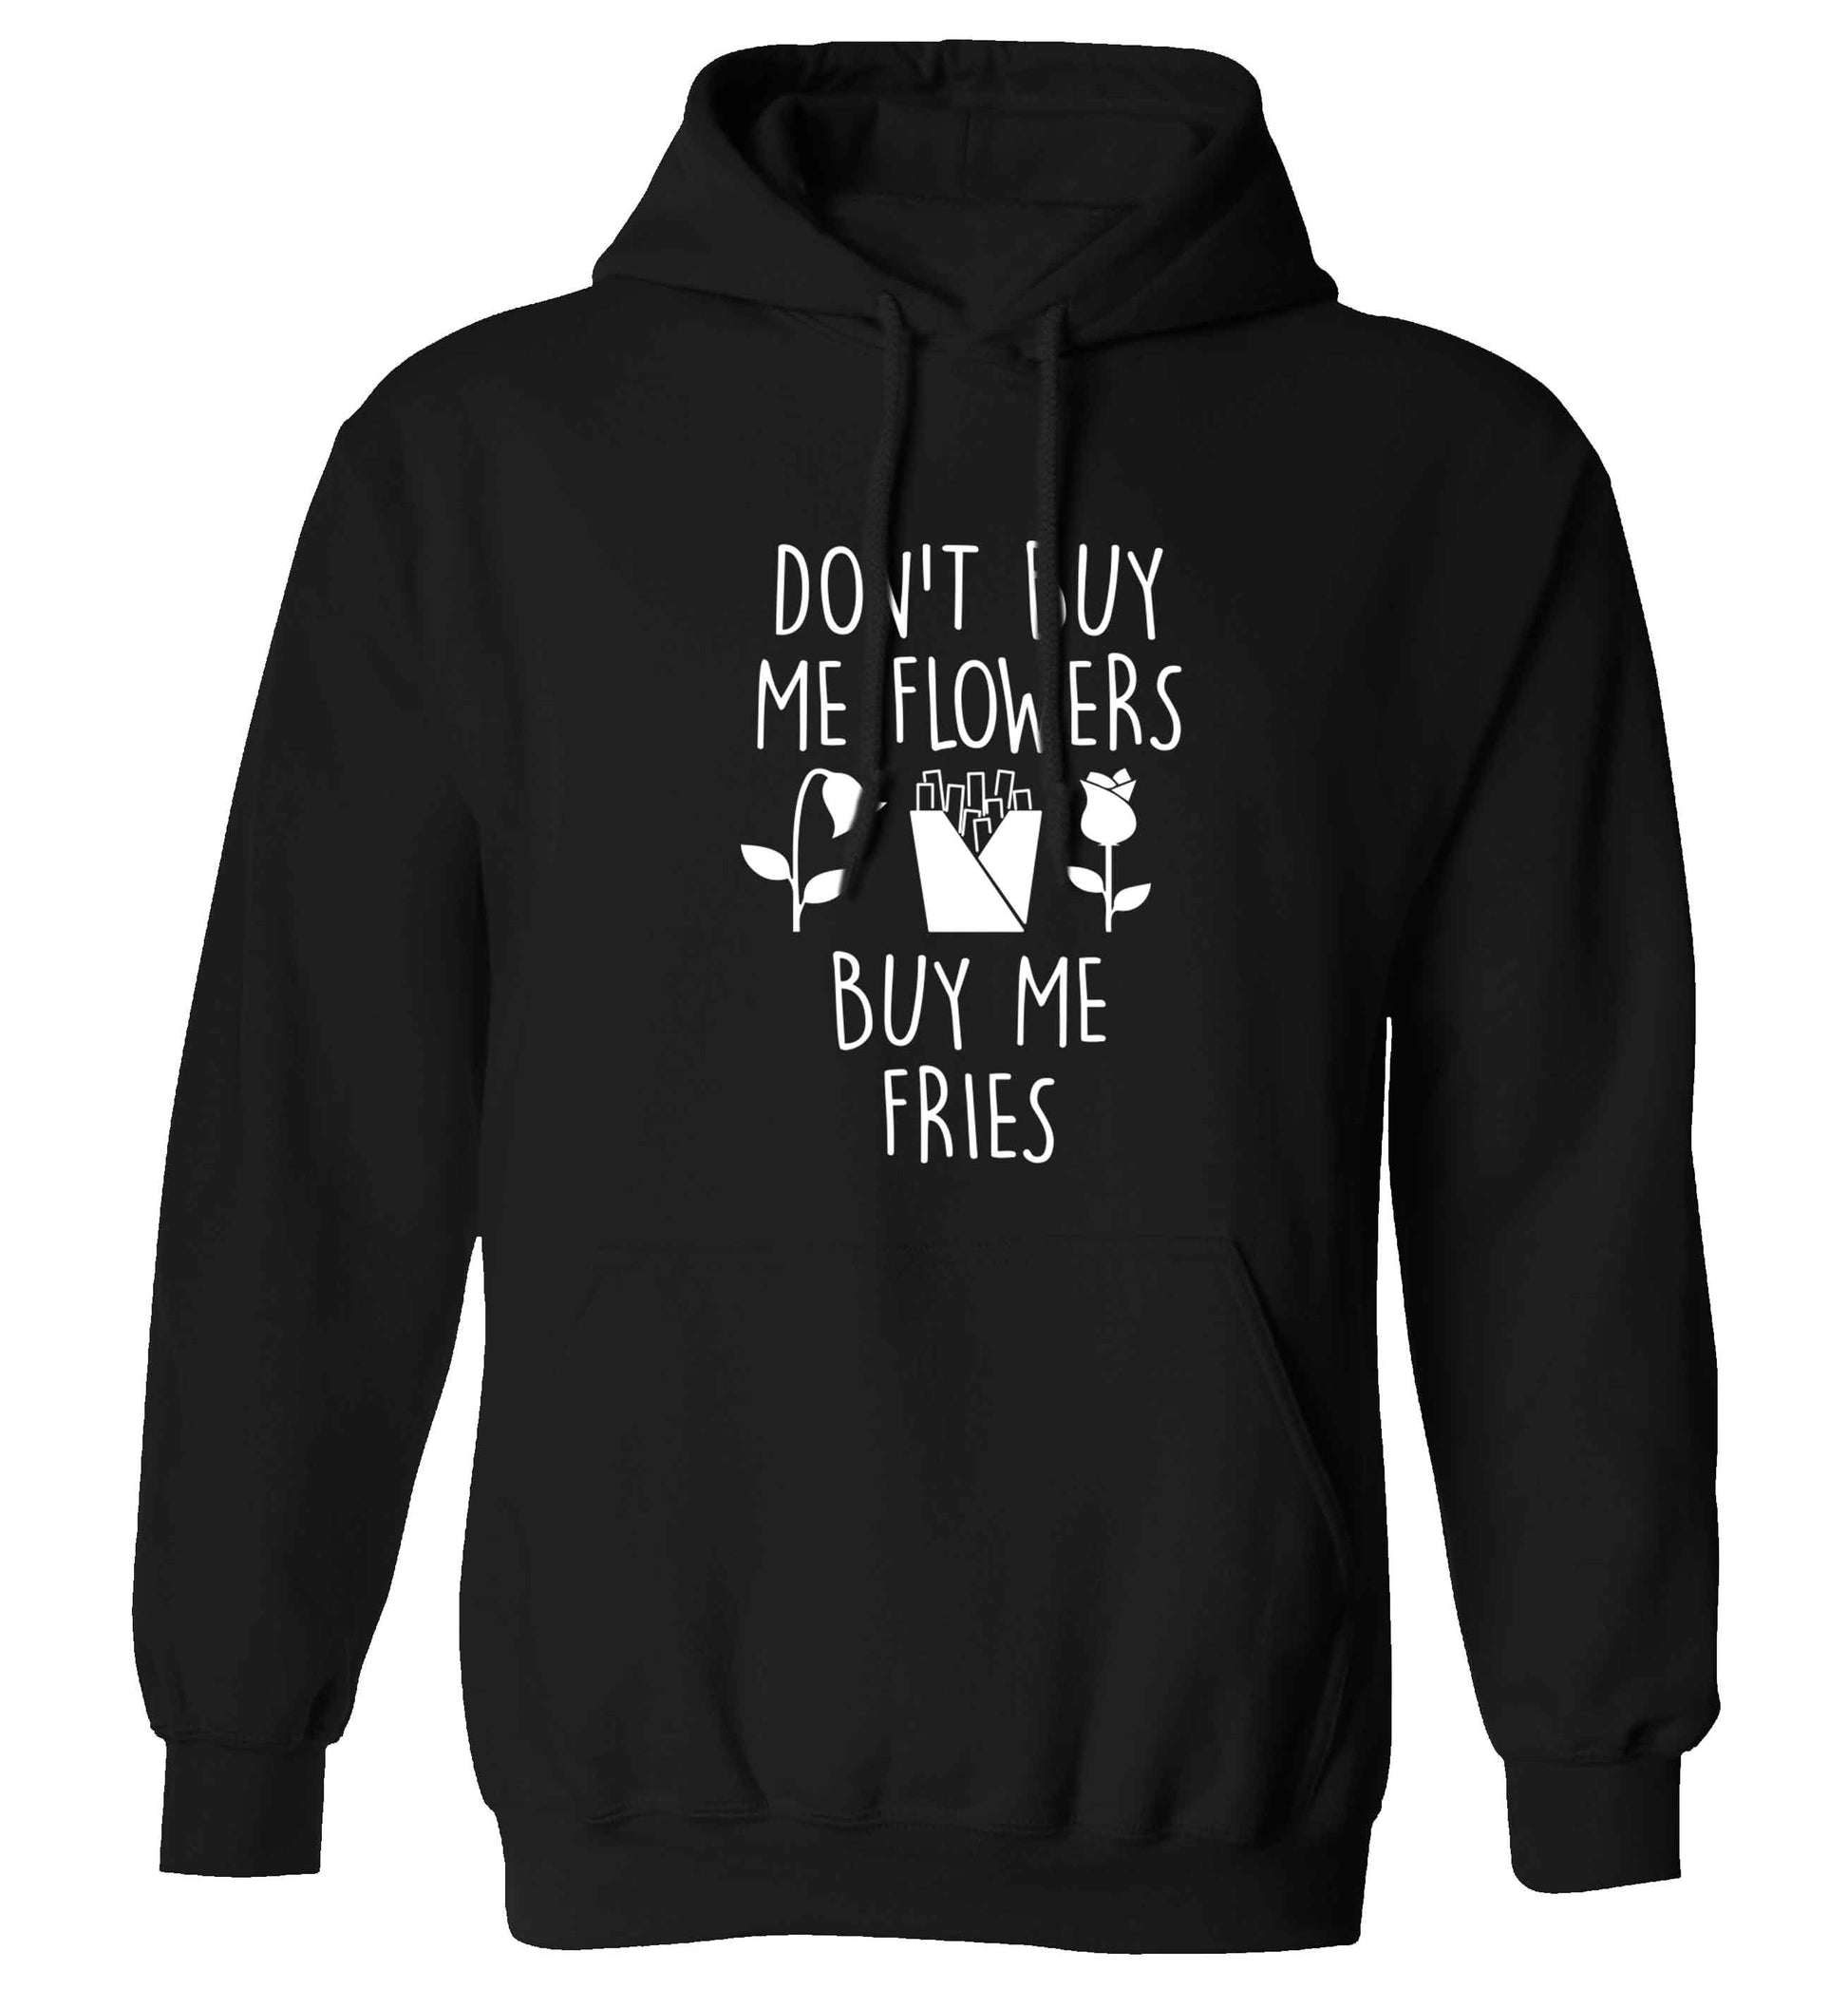 Don't buy me flowers buy me fries adults unisex black hoodie 2XL